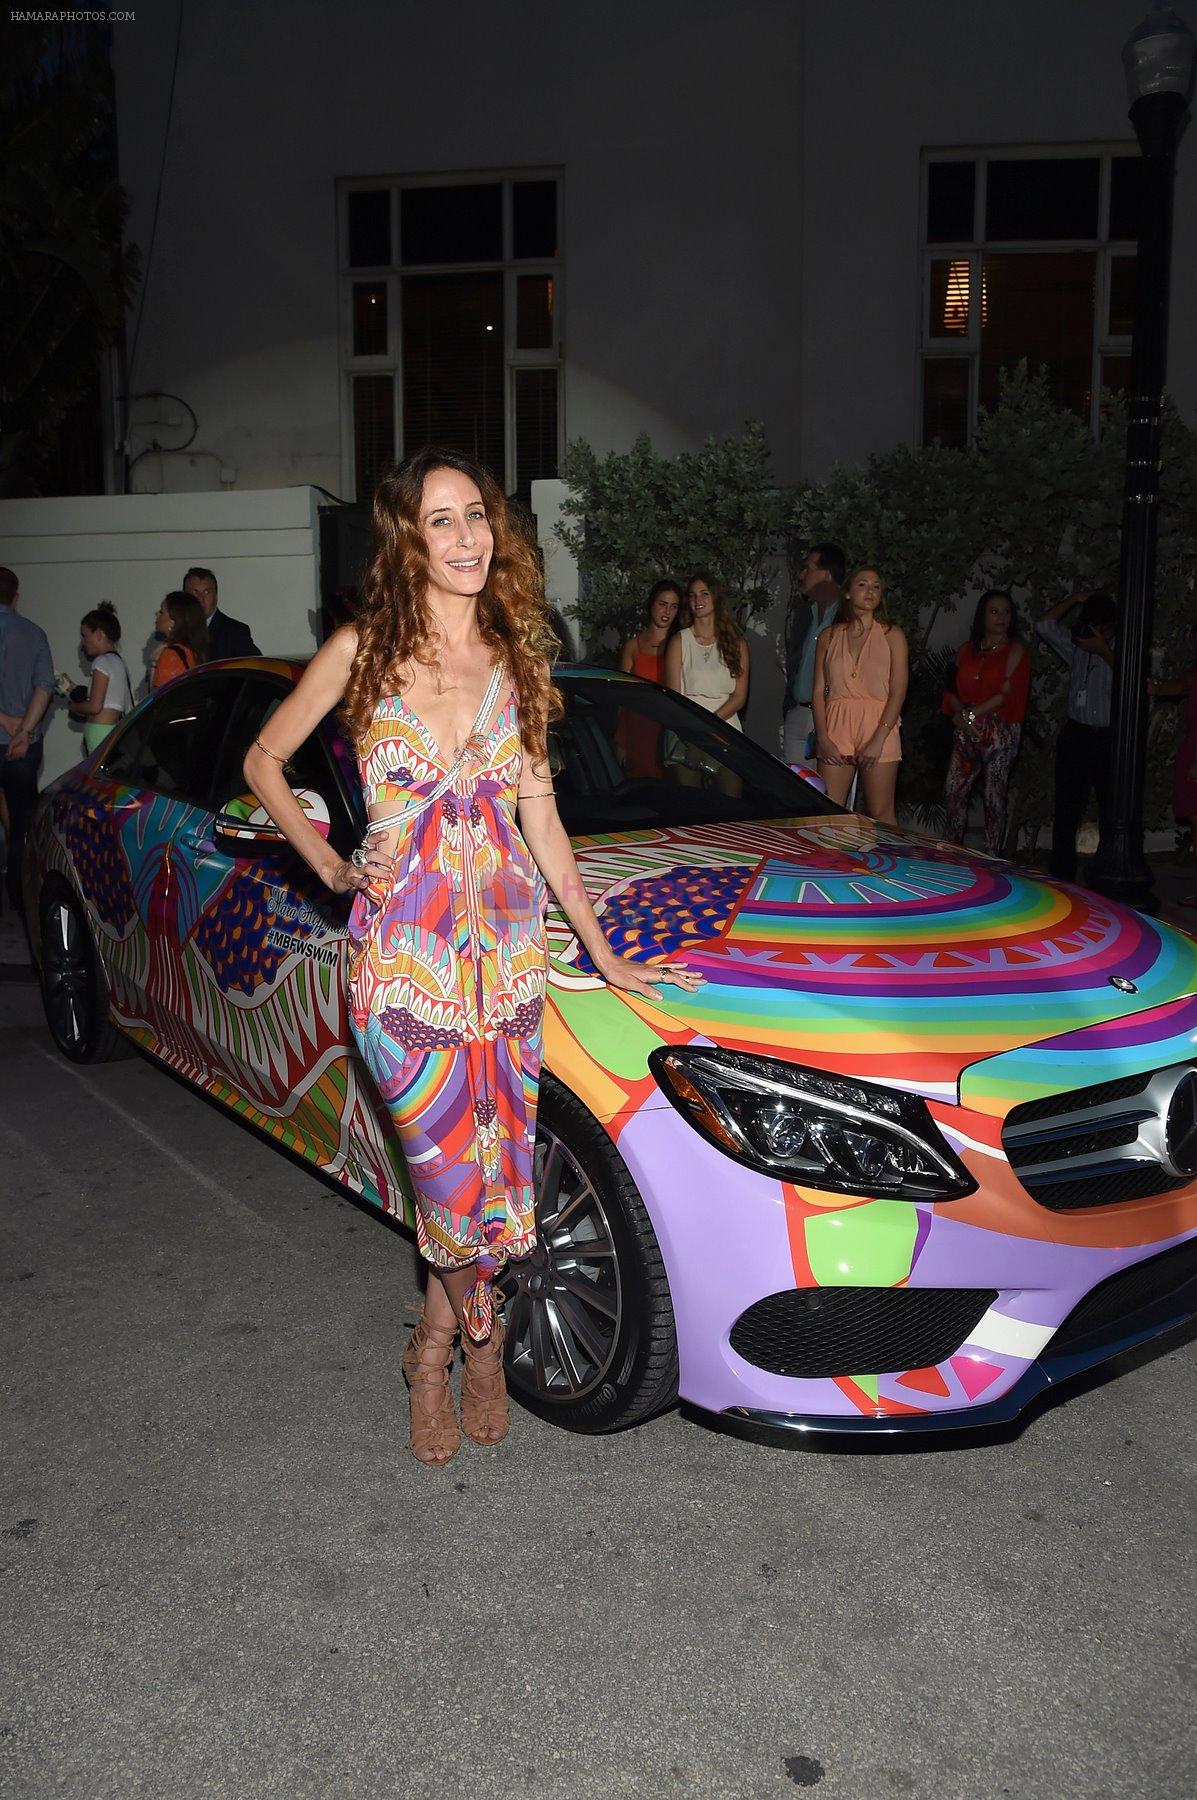 2015 Mercedes-Benz Fashion Week Miami [Swim] on 18th July 2014